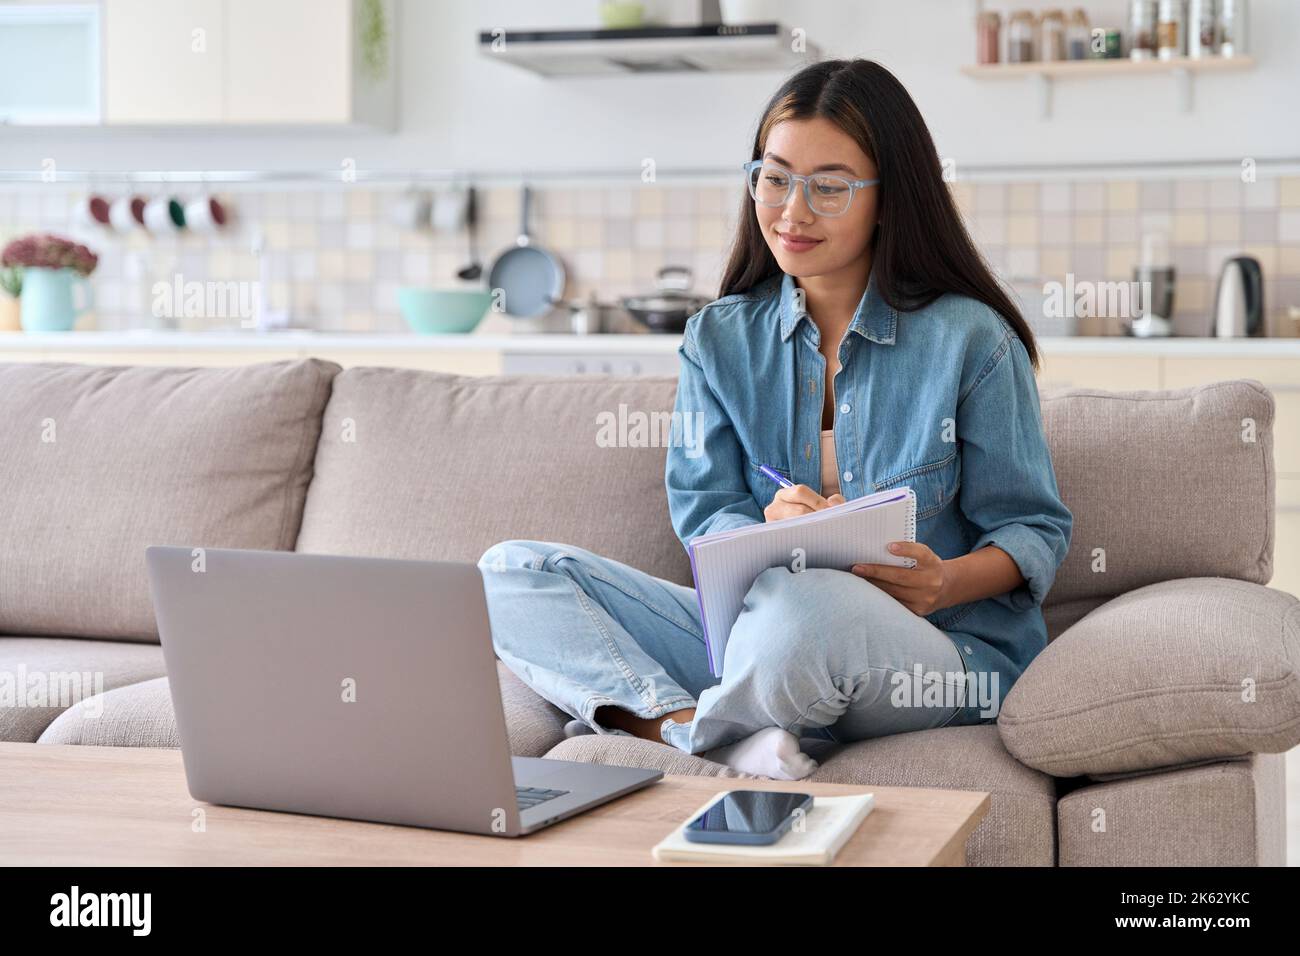 Femme asiatique adolescente regardant un webinaire sur un ordinateur portable pour prendre des notes Banque D'Images